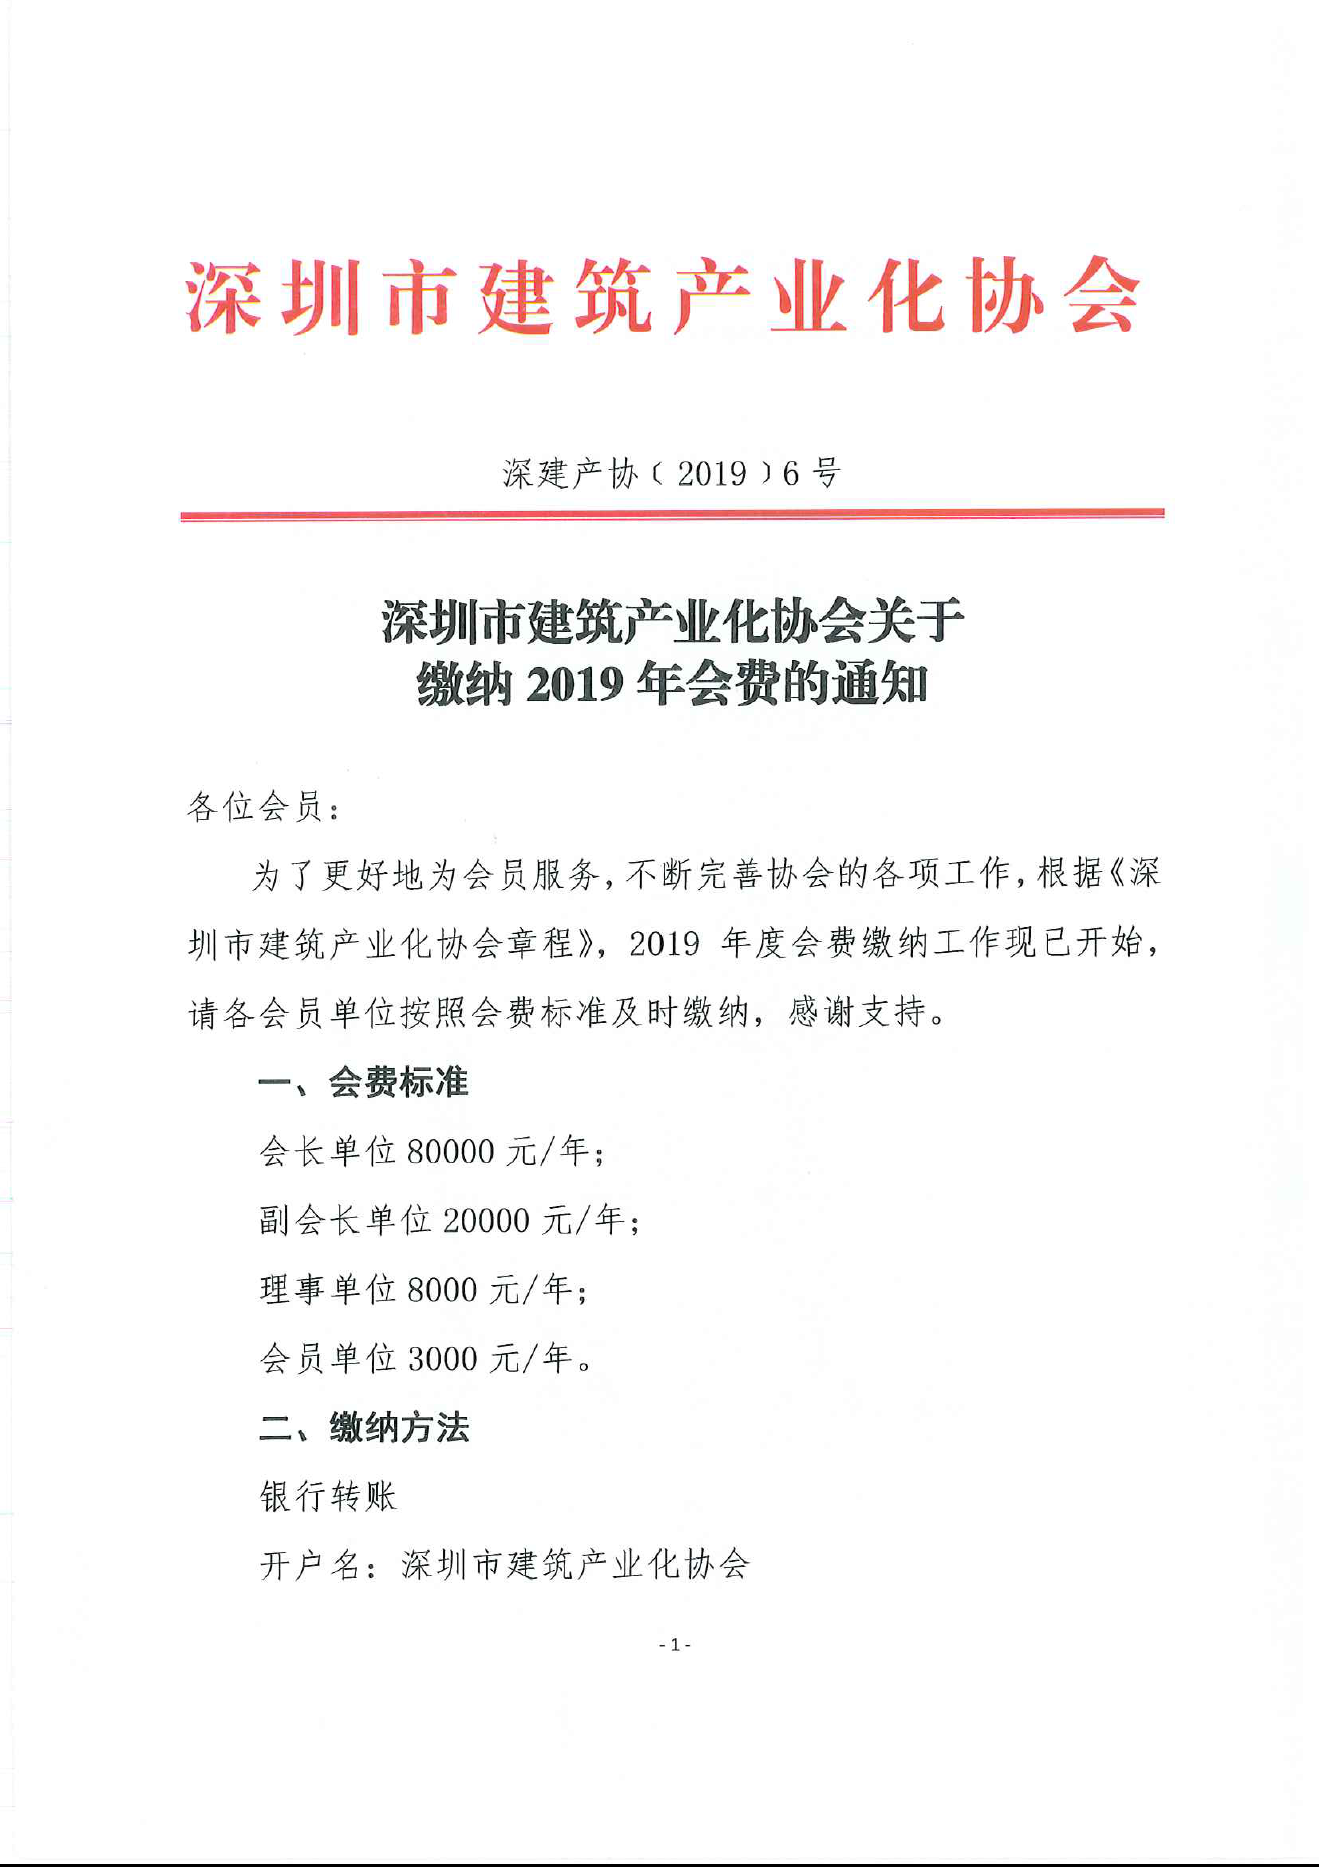 深圳市建筑产业化协会关于缴纳2019年会费的通知